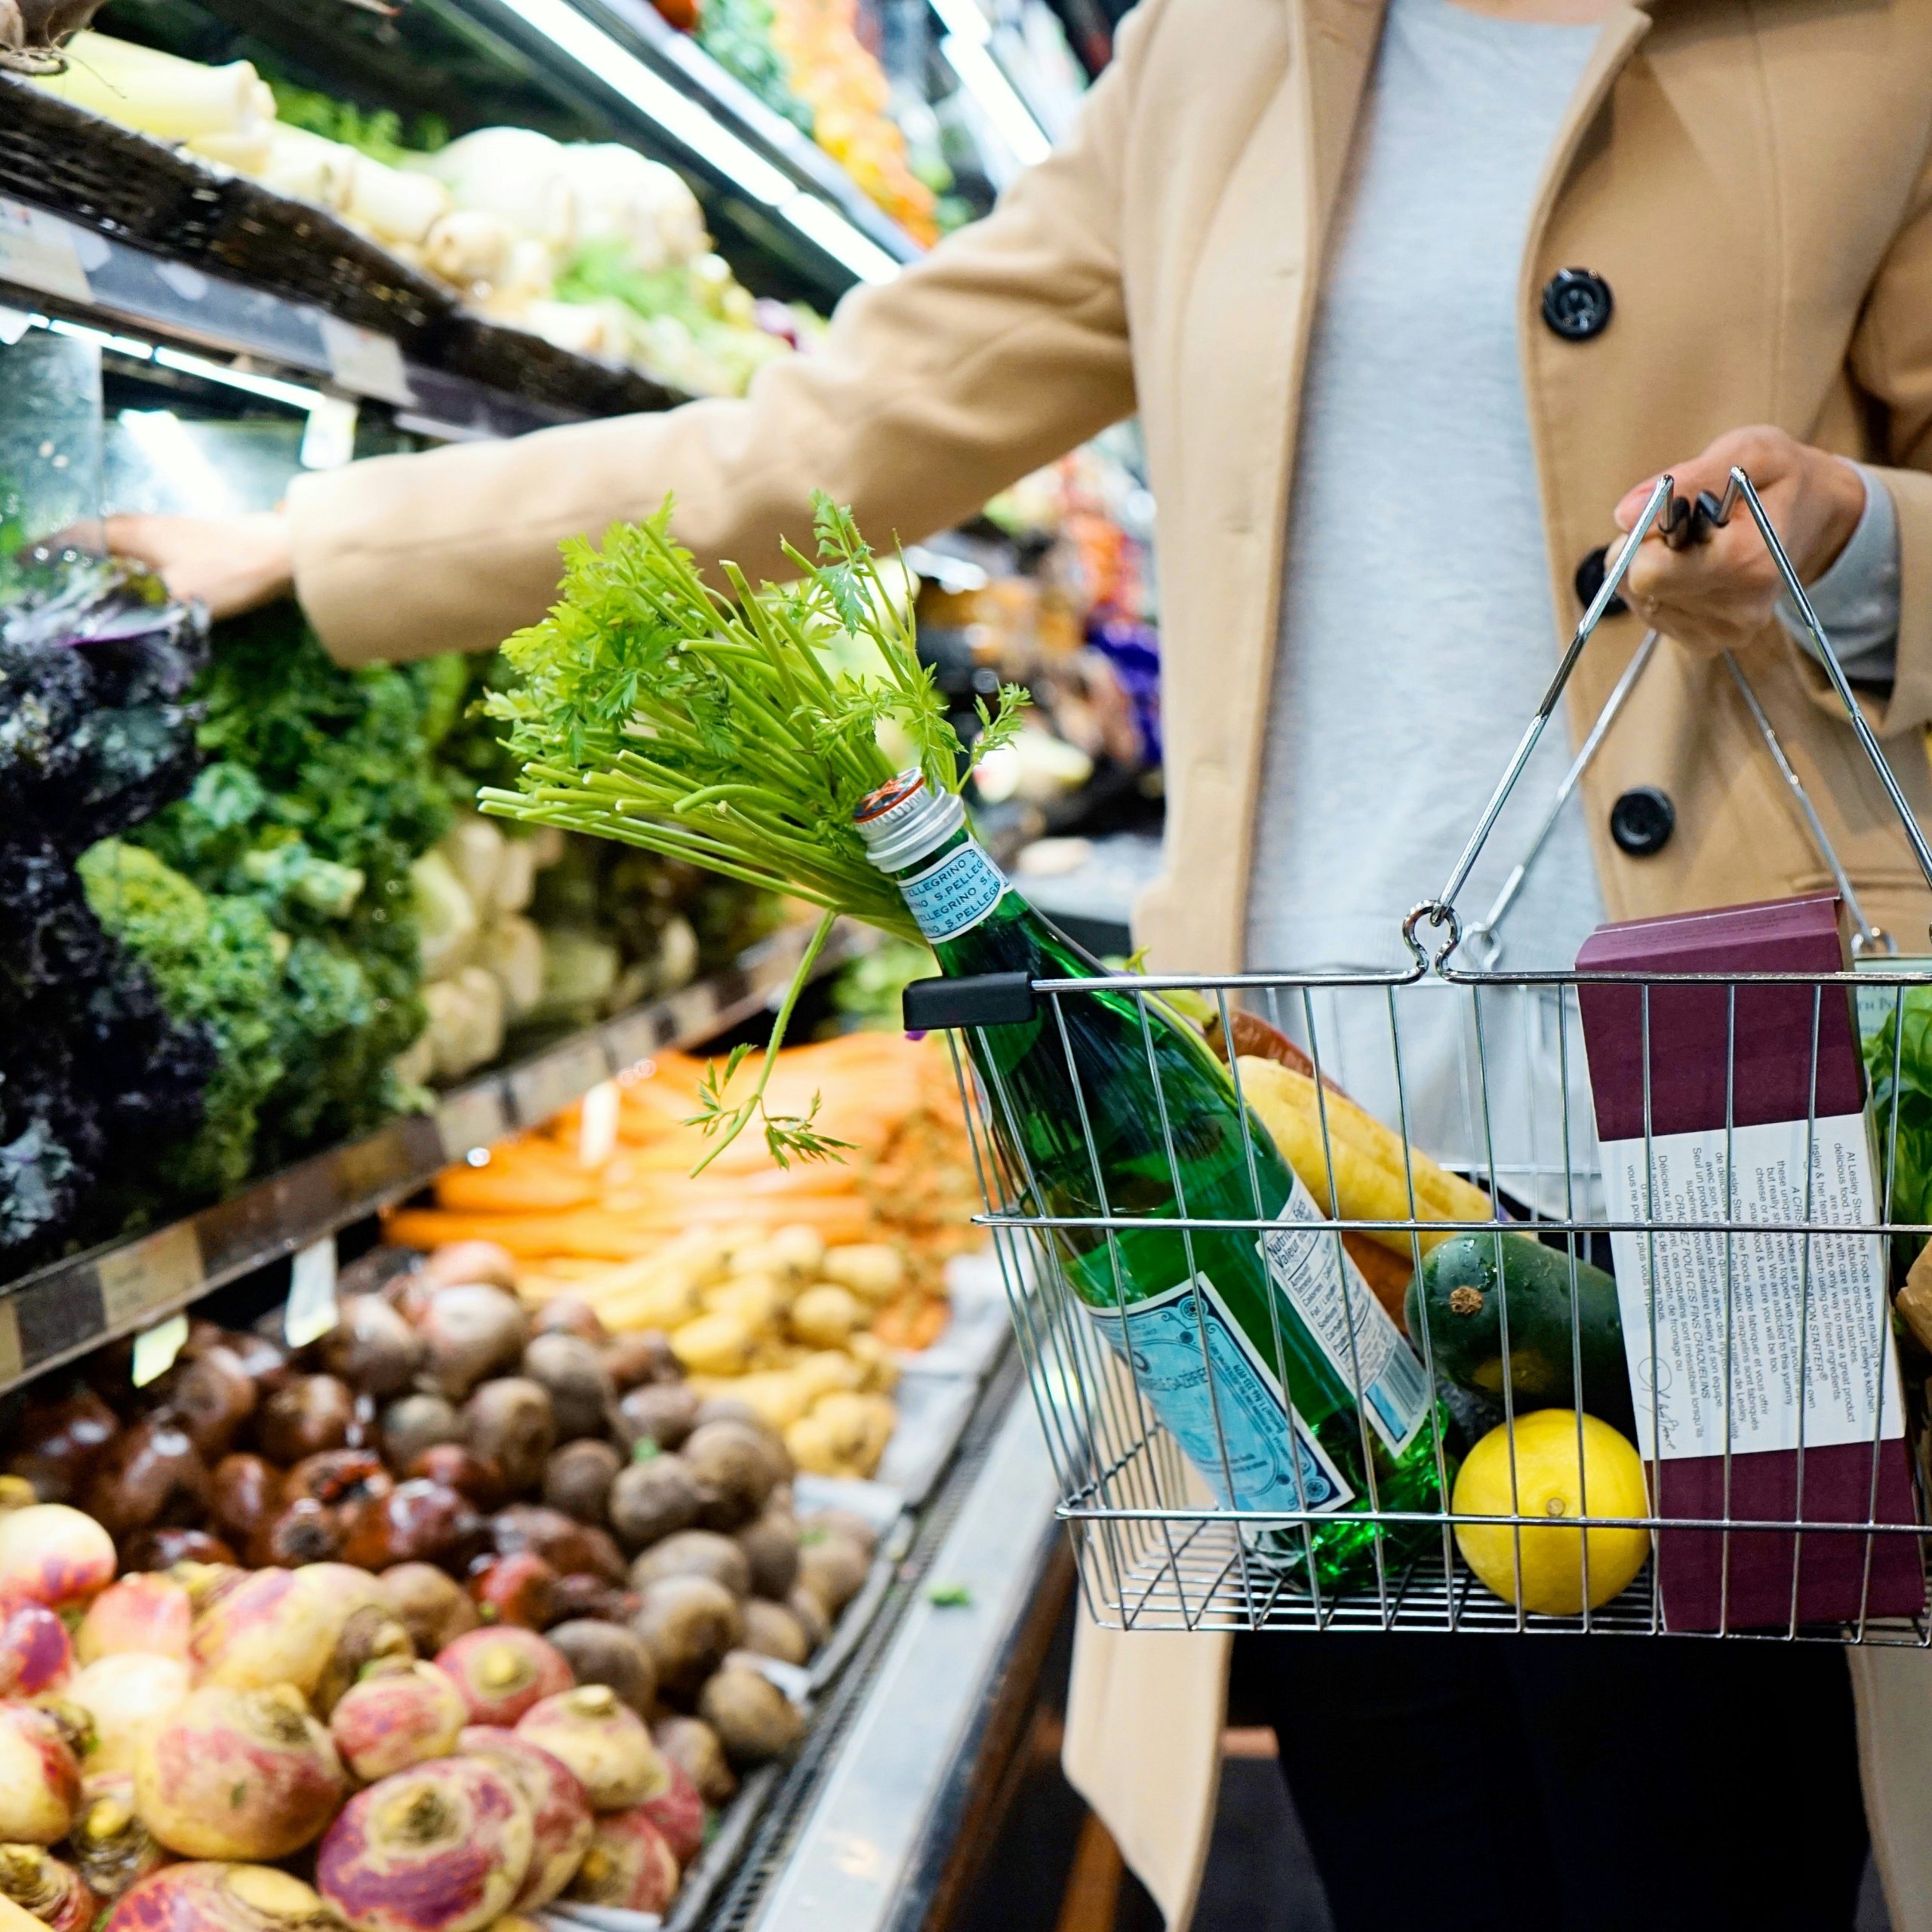 Le gouvernement bruxellois fait un pas de plus pour la réduction du gaspillage alimentaire dans les supermarchés